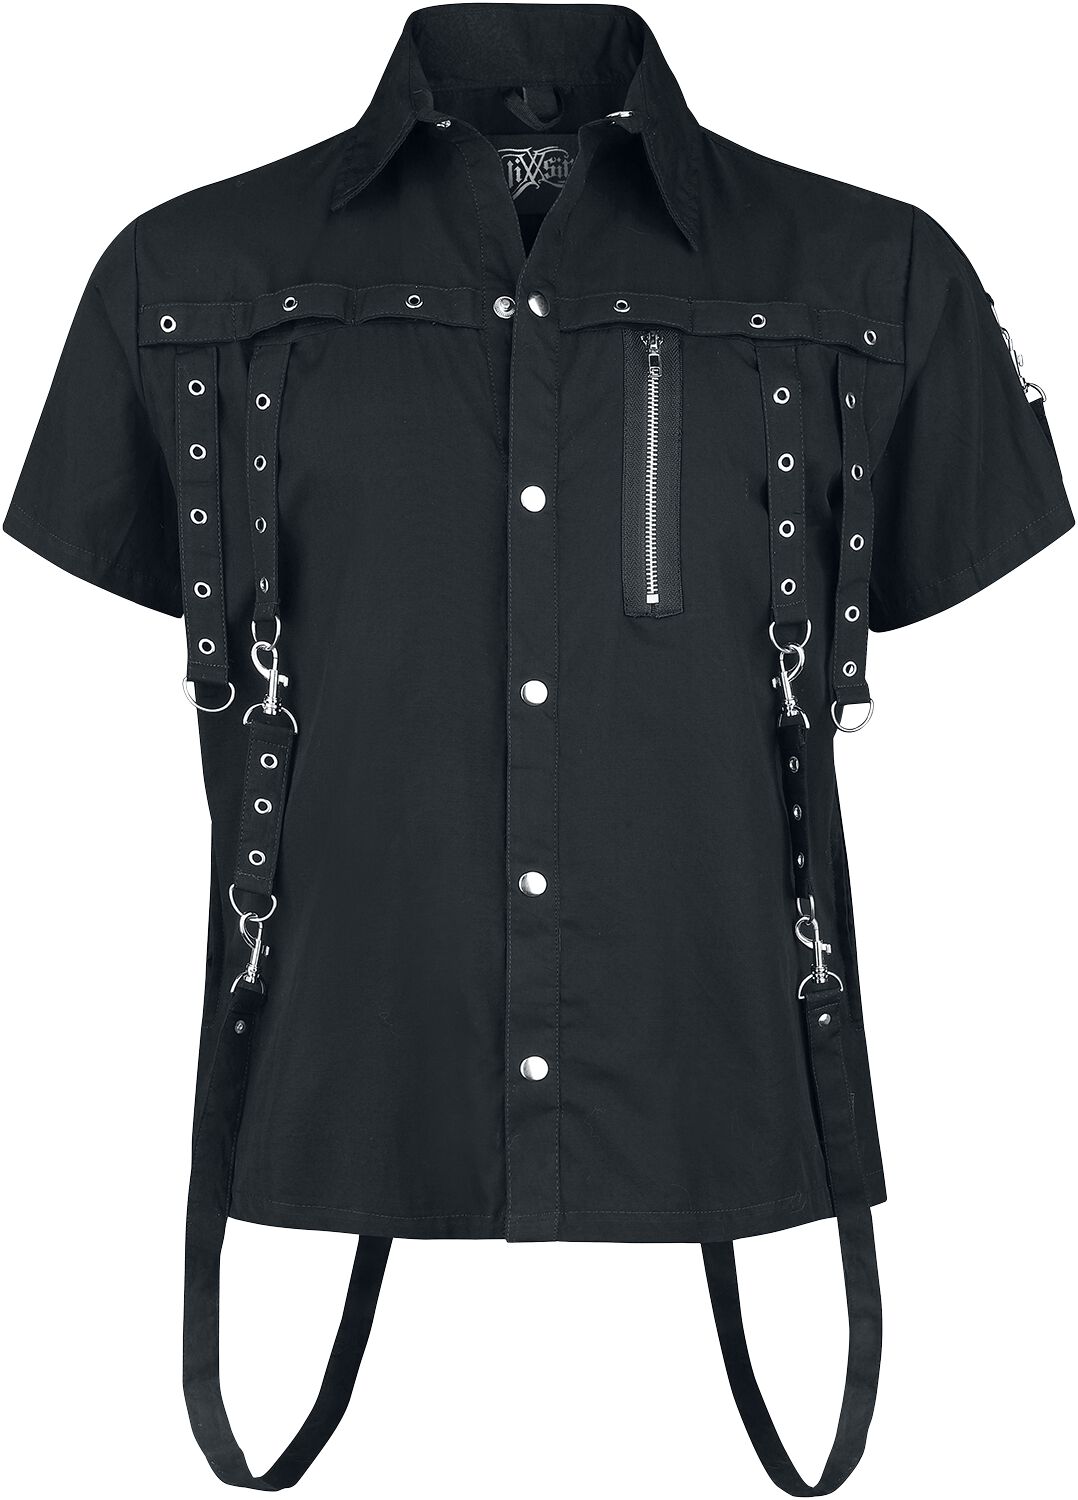 Image of Camicia Maniche Corte Gothic di Vixxsin - Cassius shirt - S a 4XL - Uomo - nero